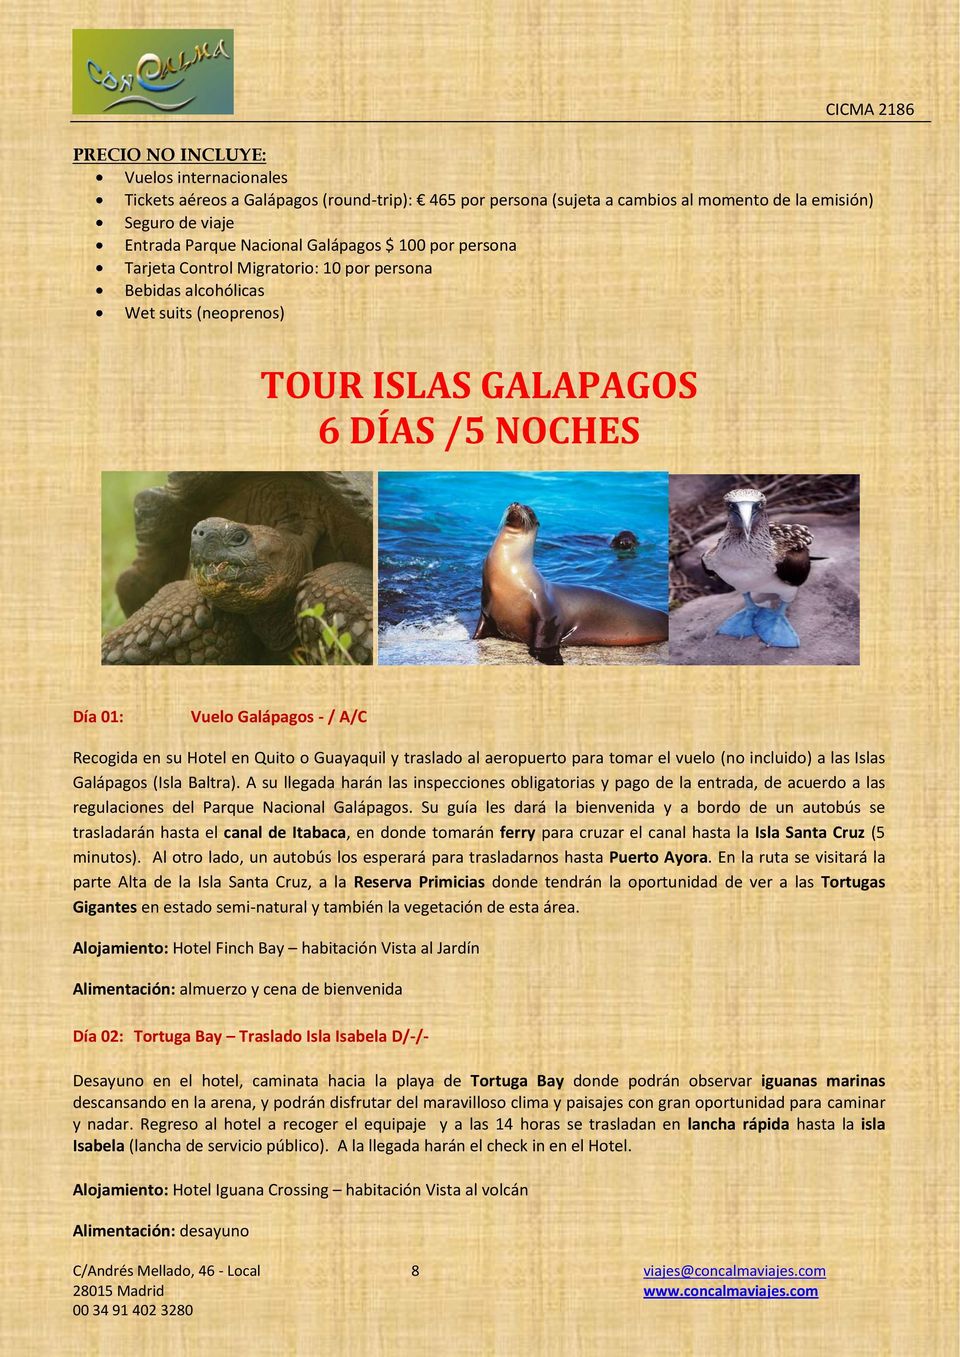 Guayaquil y traslado al aeropuerto para tomar el vuelo (no incluido) a las Islas Galápagos (Isla Baltra).